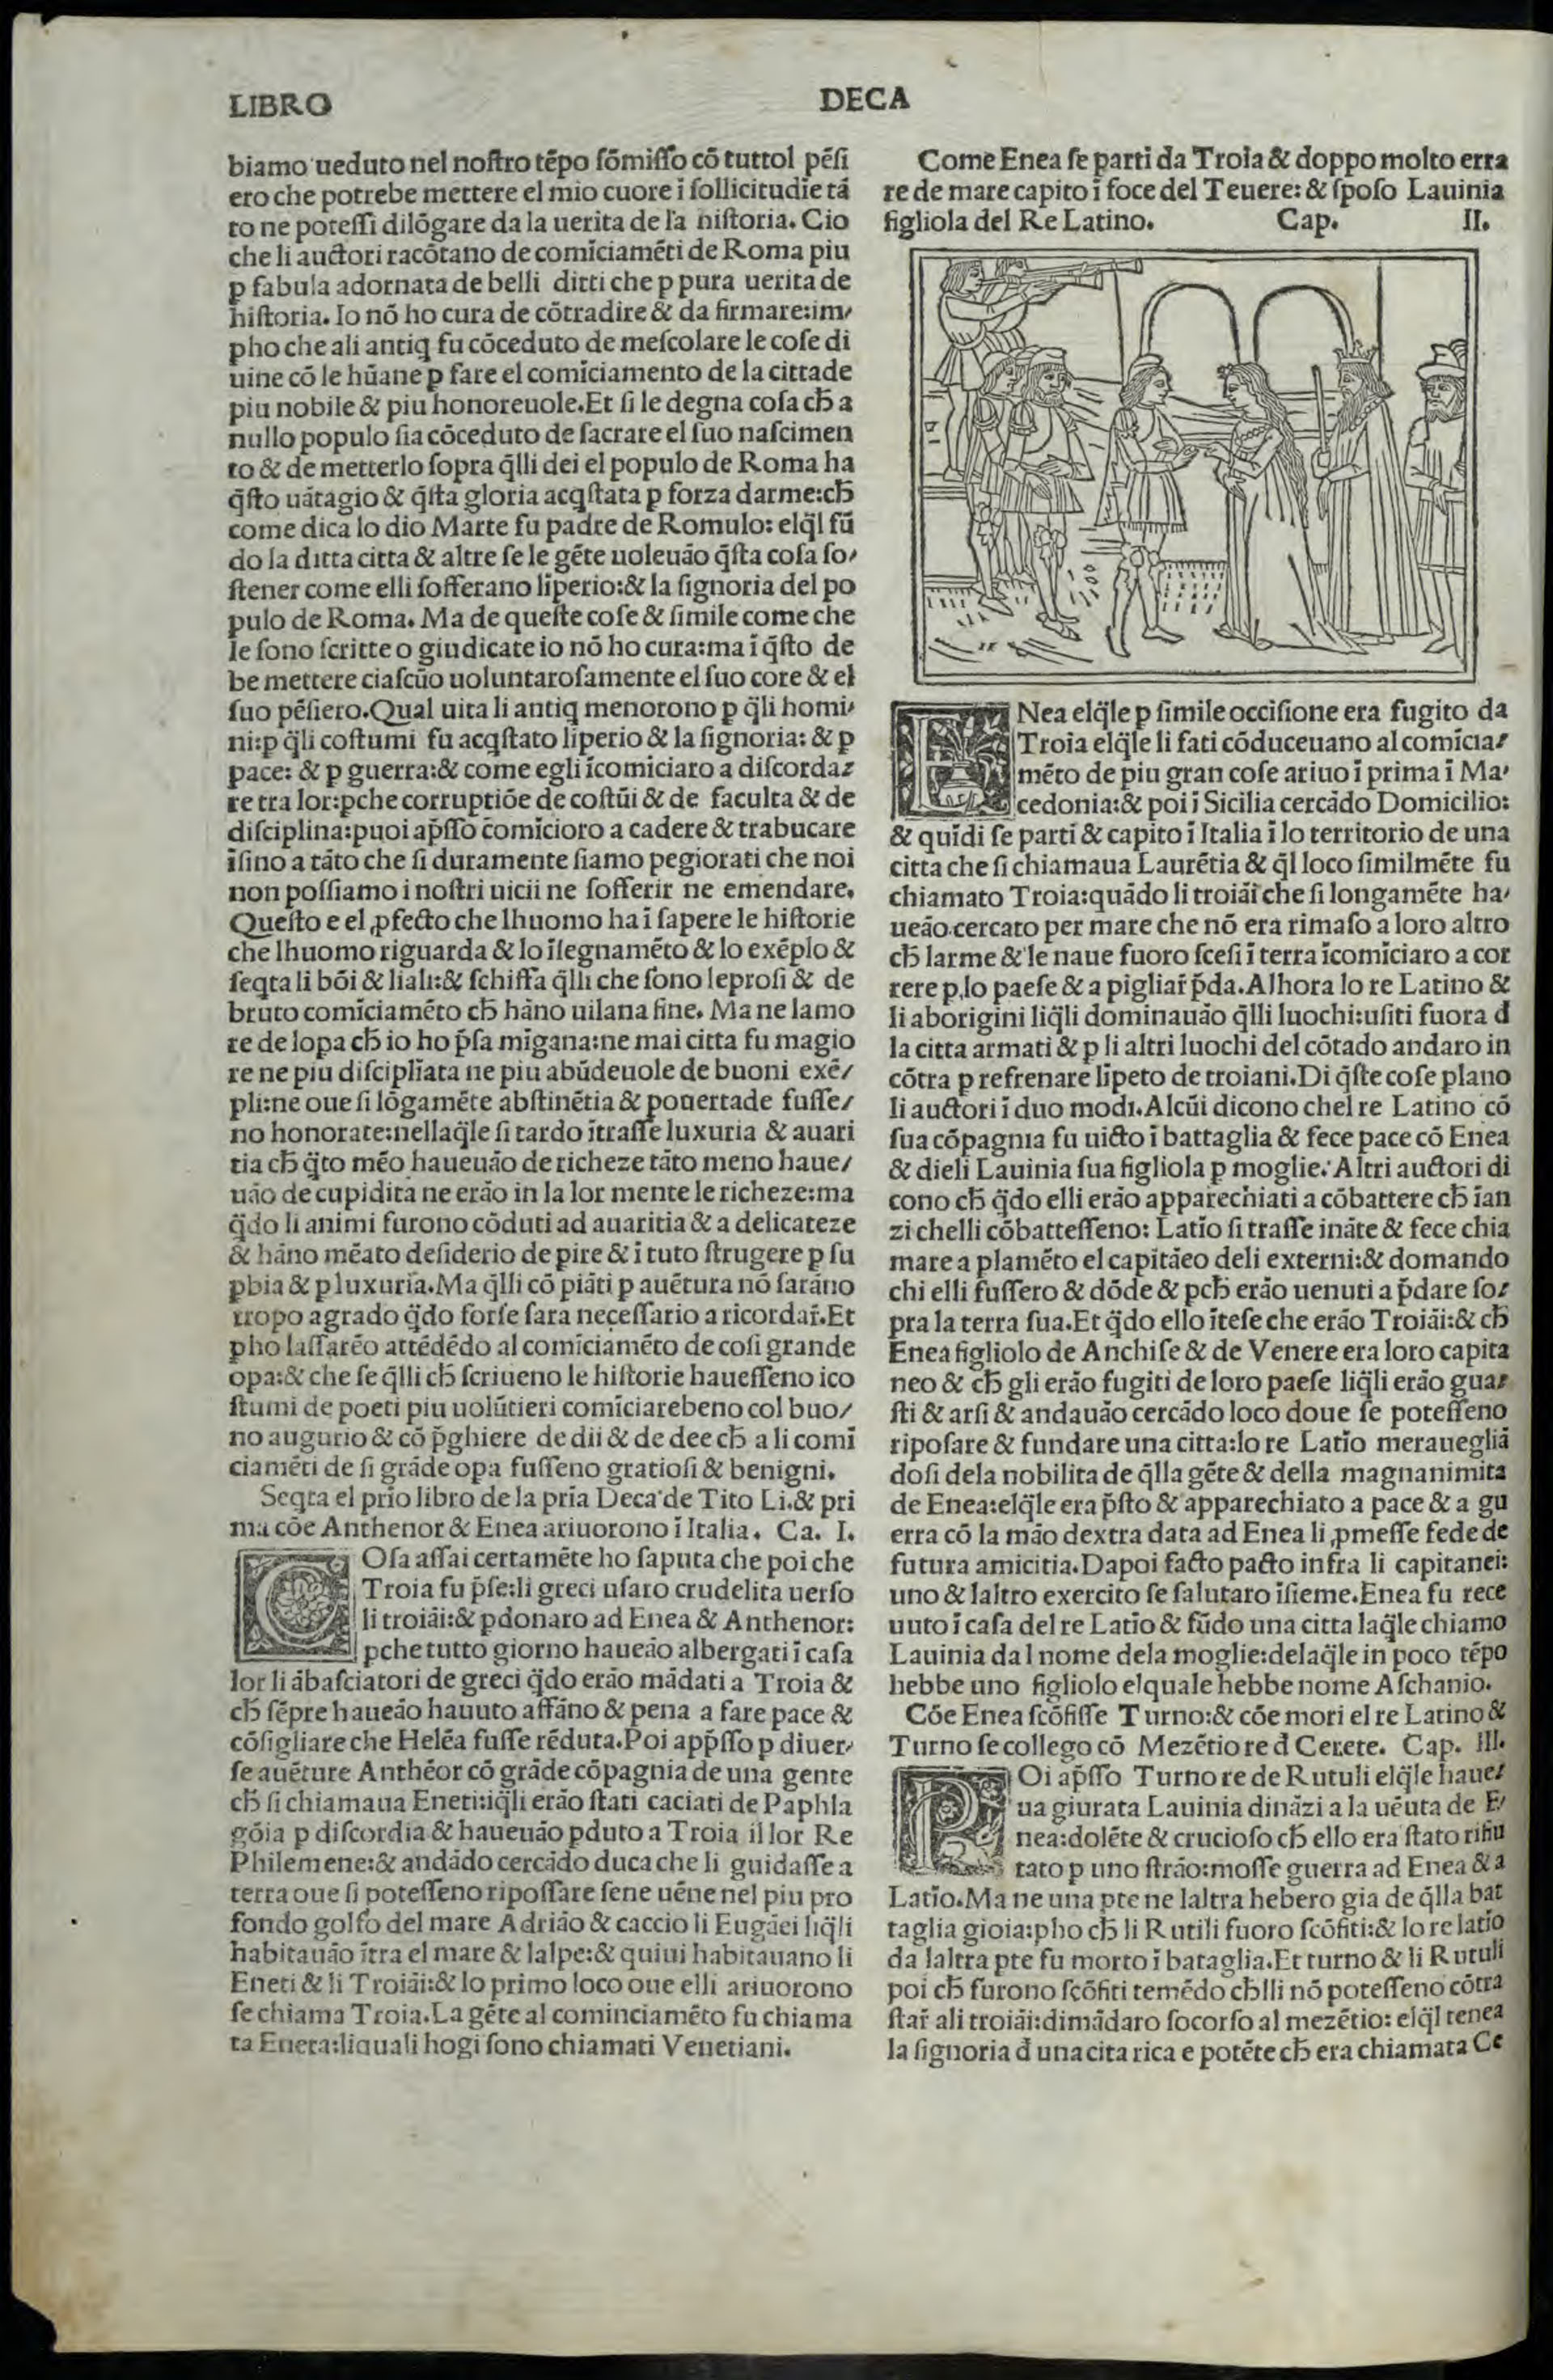 Ab urbe condita (Historia de Roma), de Tito Livio, 1493. Biblioteca europea di informazione e cultura (Wikicommons)